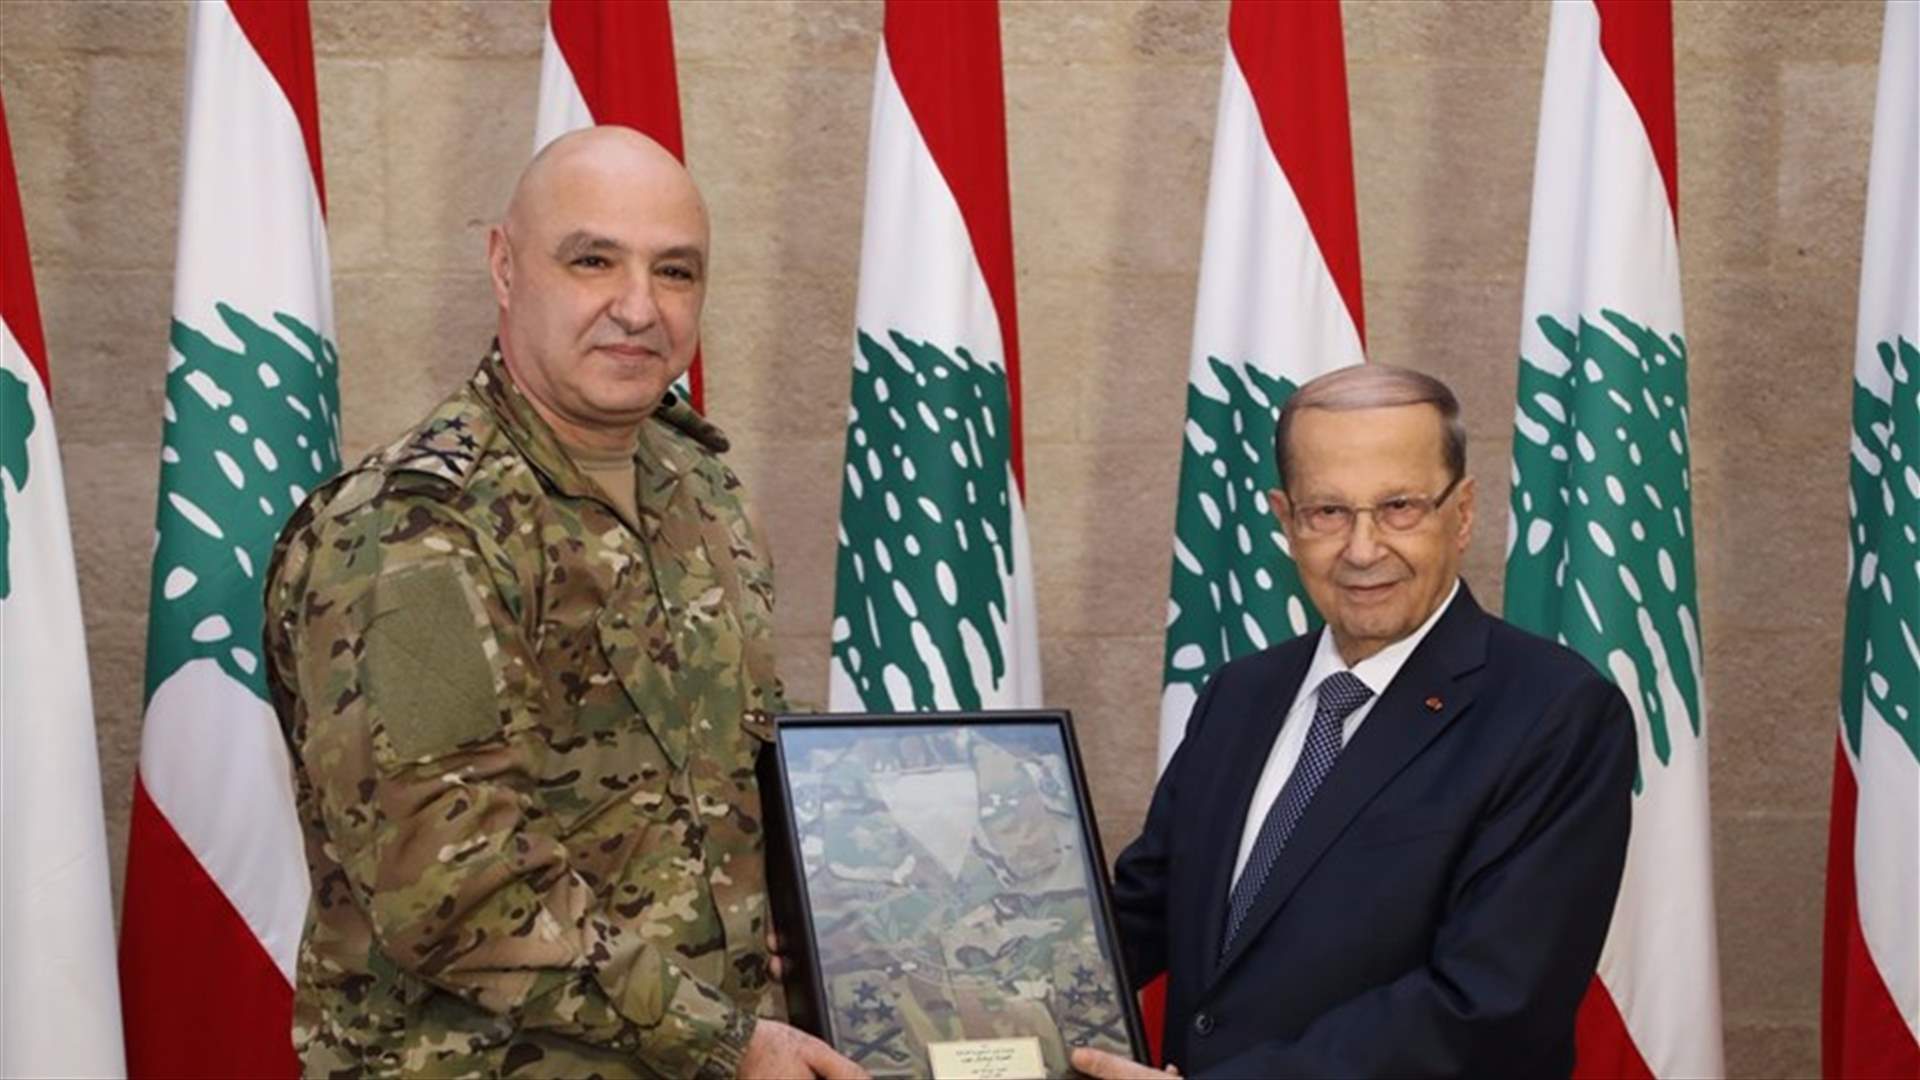 بالصورة - قائد الجيش يسلّم الرئيس عون بزّة القتال الجديدة